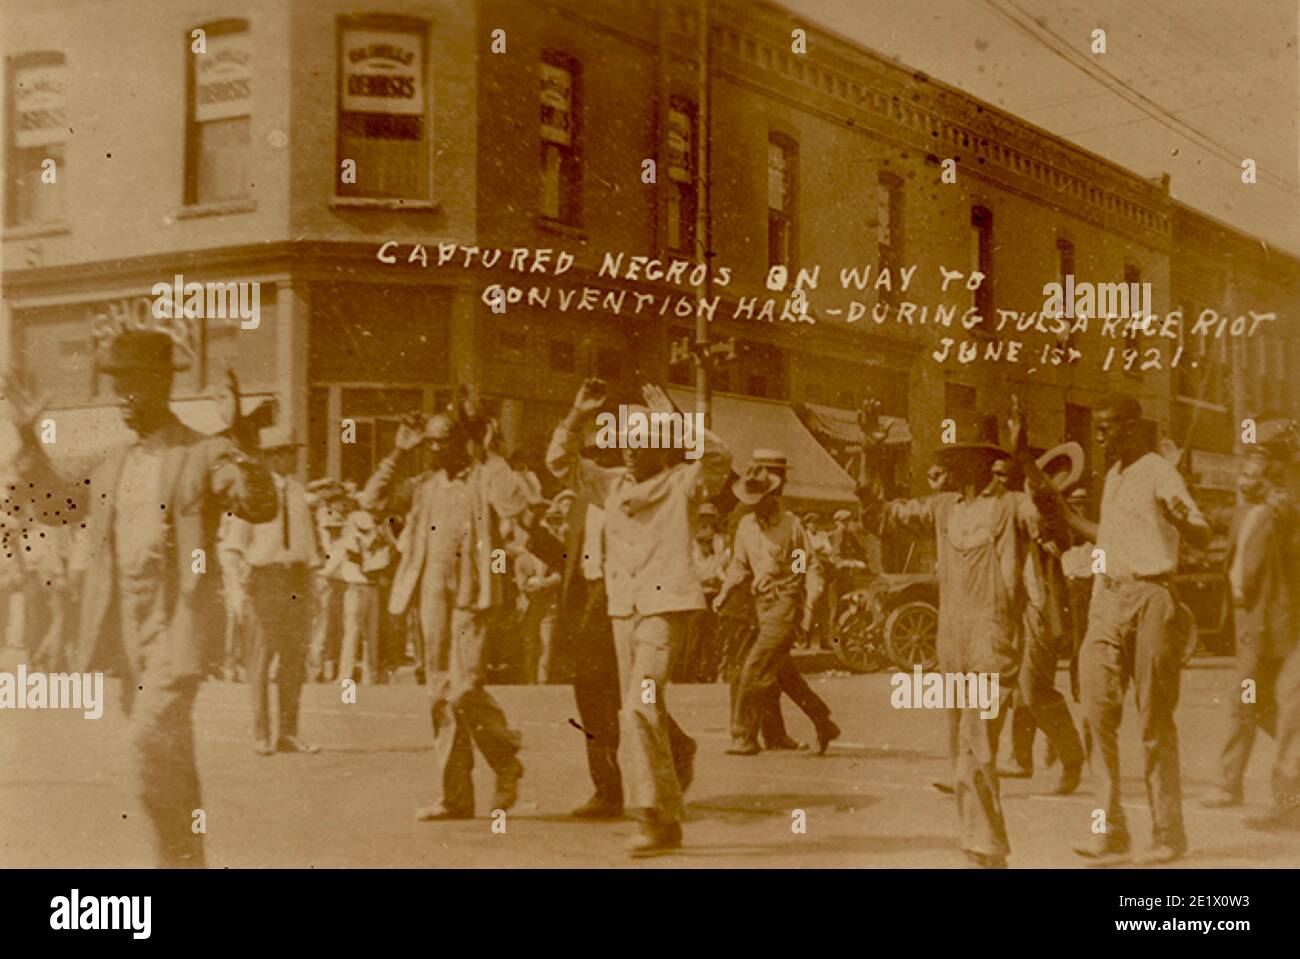 Vittime della rivolta di Tulsa del 1921. Afroamericani arrestati dopo le folle bianche saccheggiate in città. Foto Stock